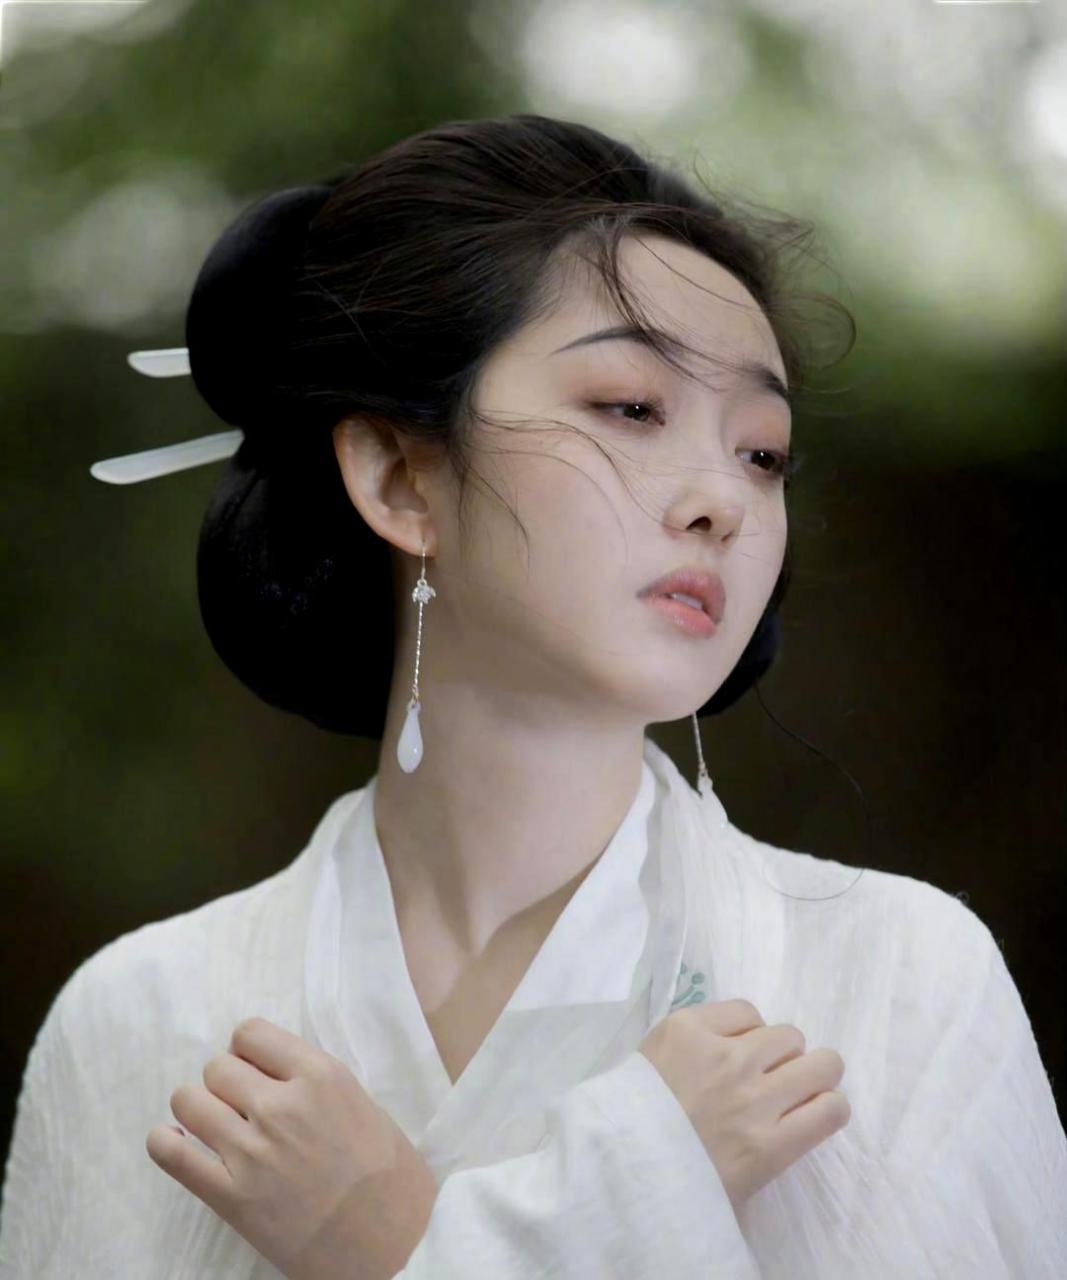 蒋梦婕饰演的林黛玉,眉间流露着淡淡的忧愁,散发出一股清新纯真的气息